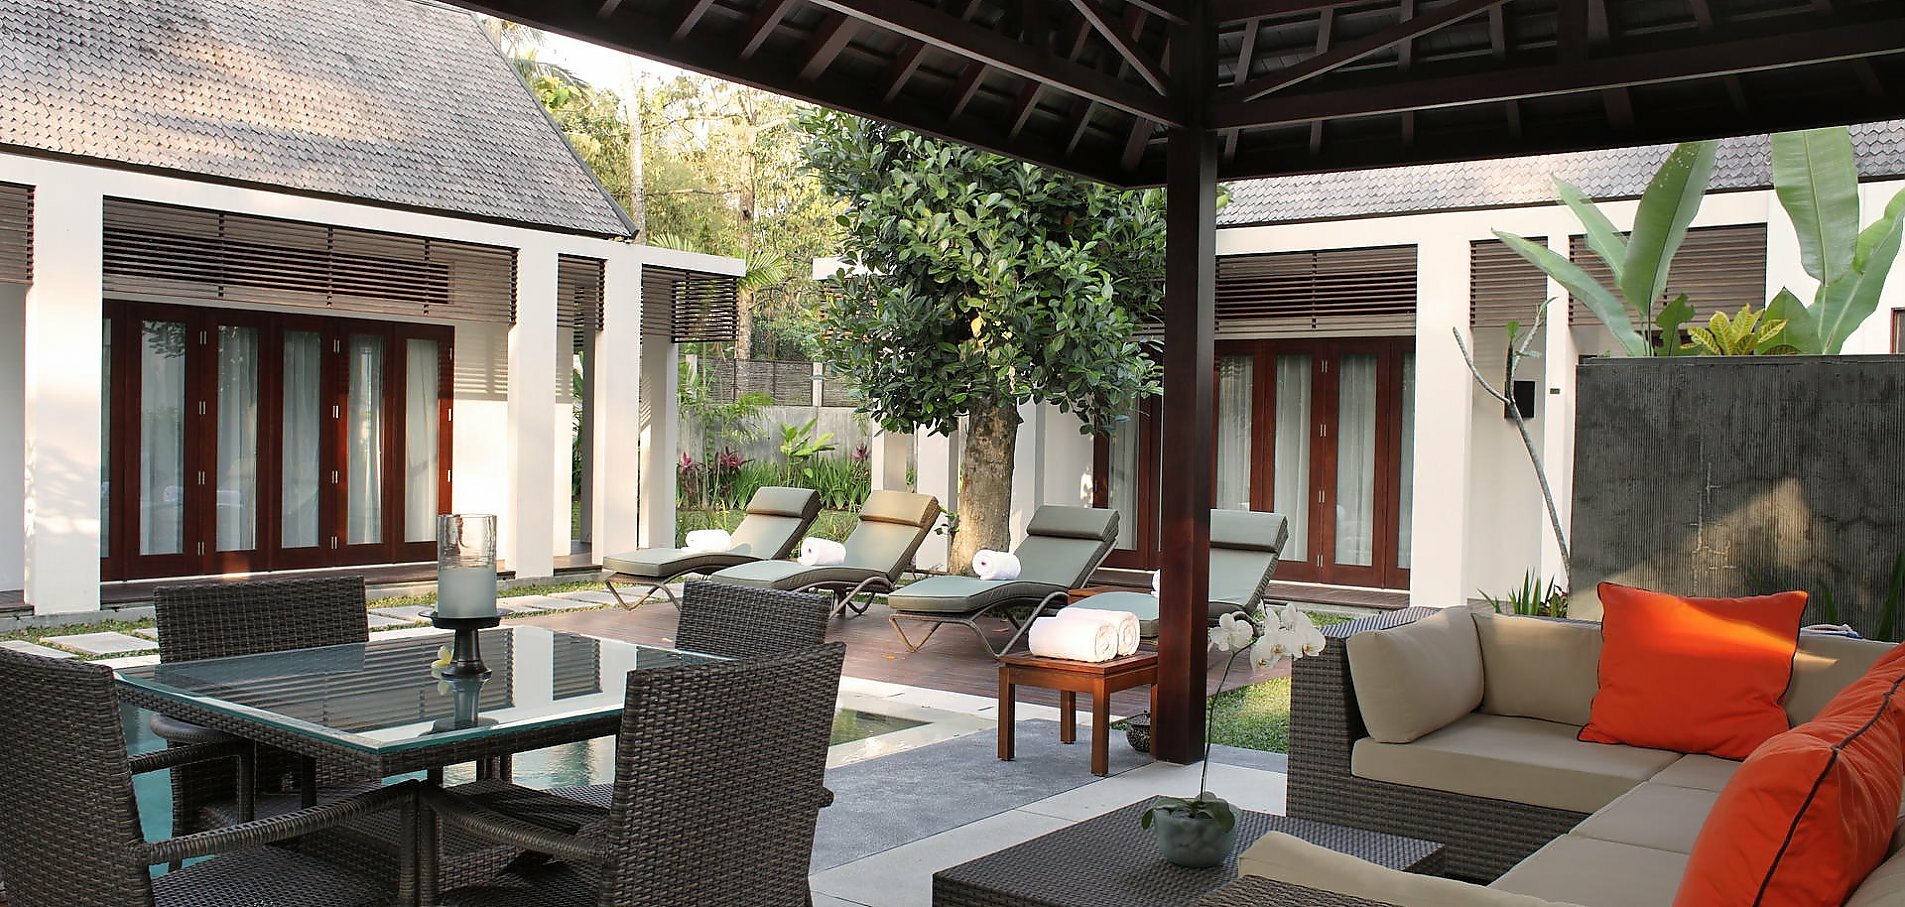 Samaya: Poolvilla Designerluksus på Bali